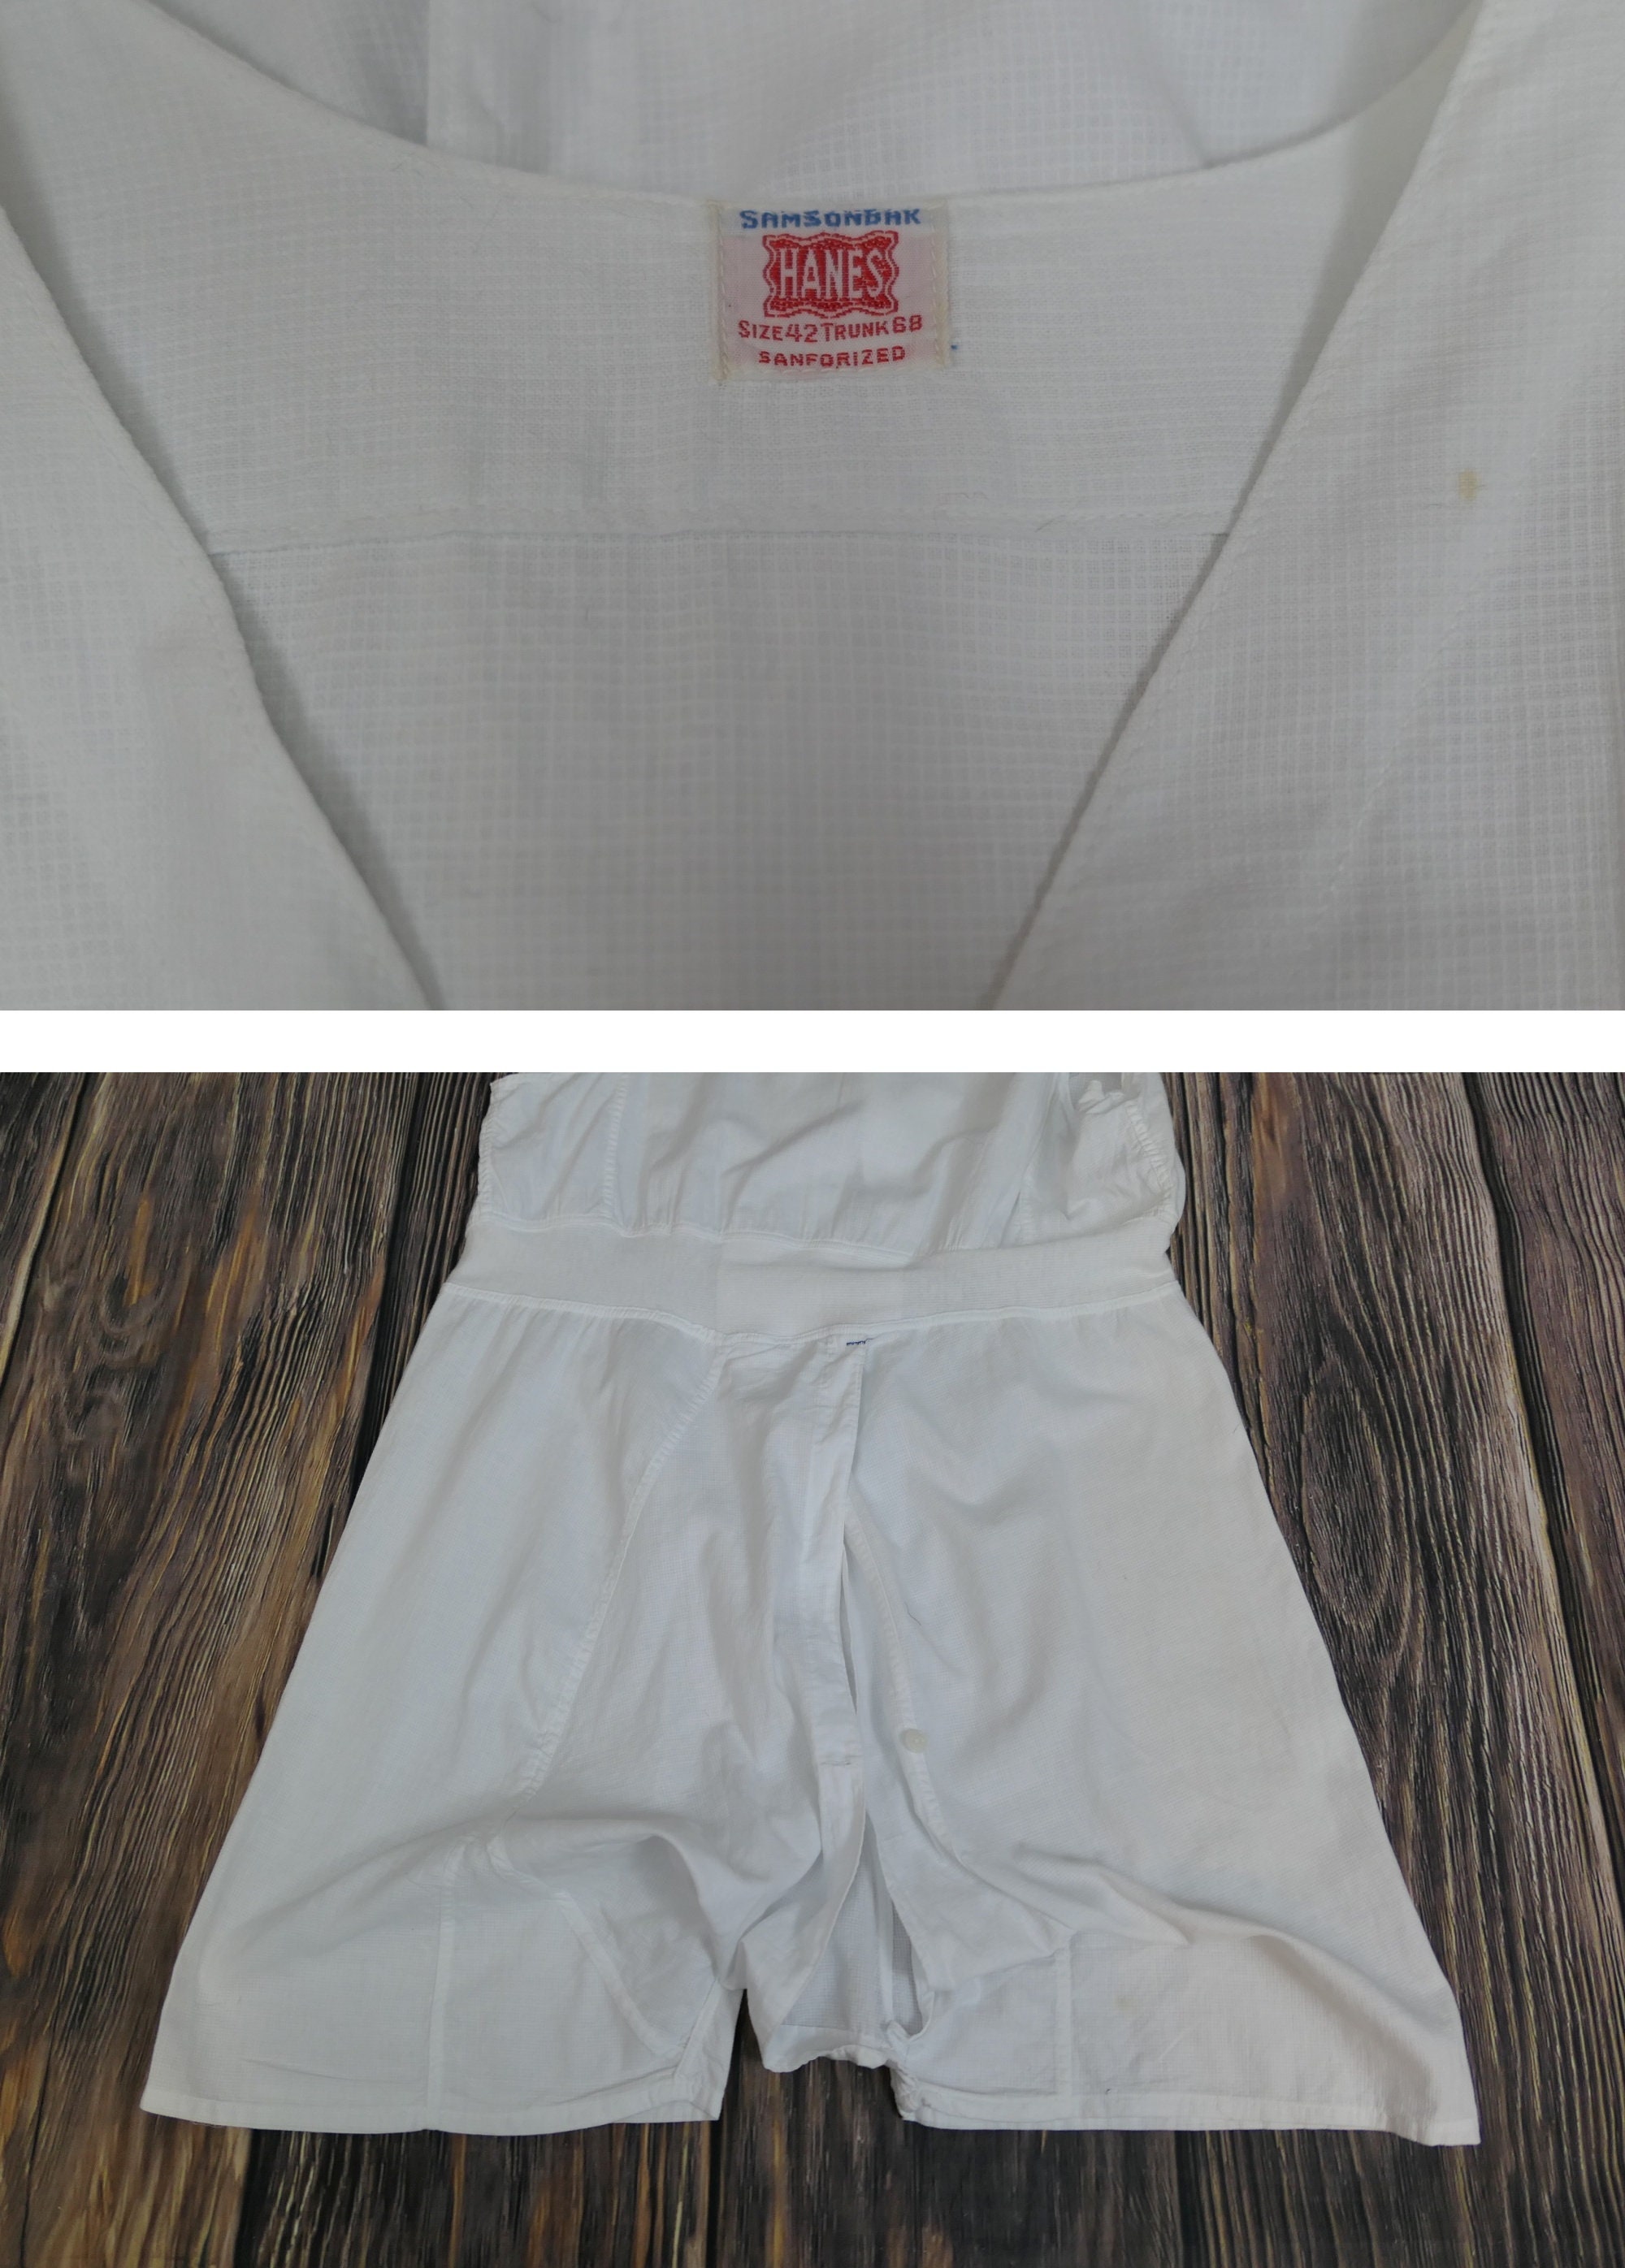 Vintage 1920s Men's Union Suit White Cotton, Hanes Large 42 Inch Chest,  Split Seat -  UK